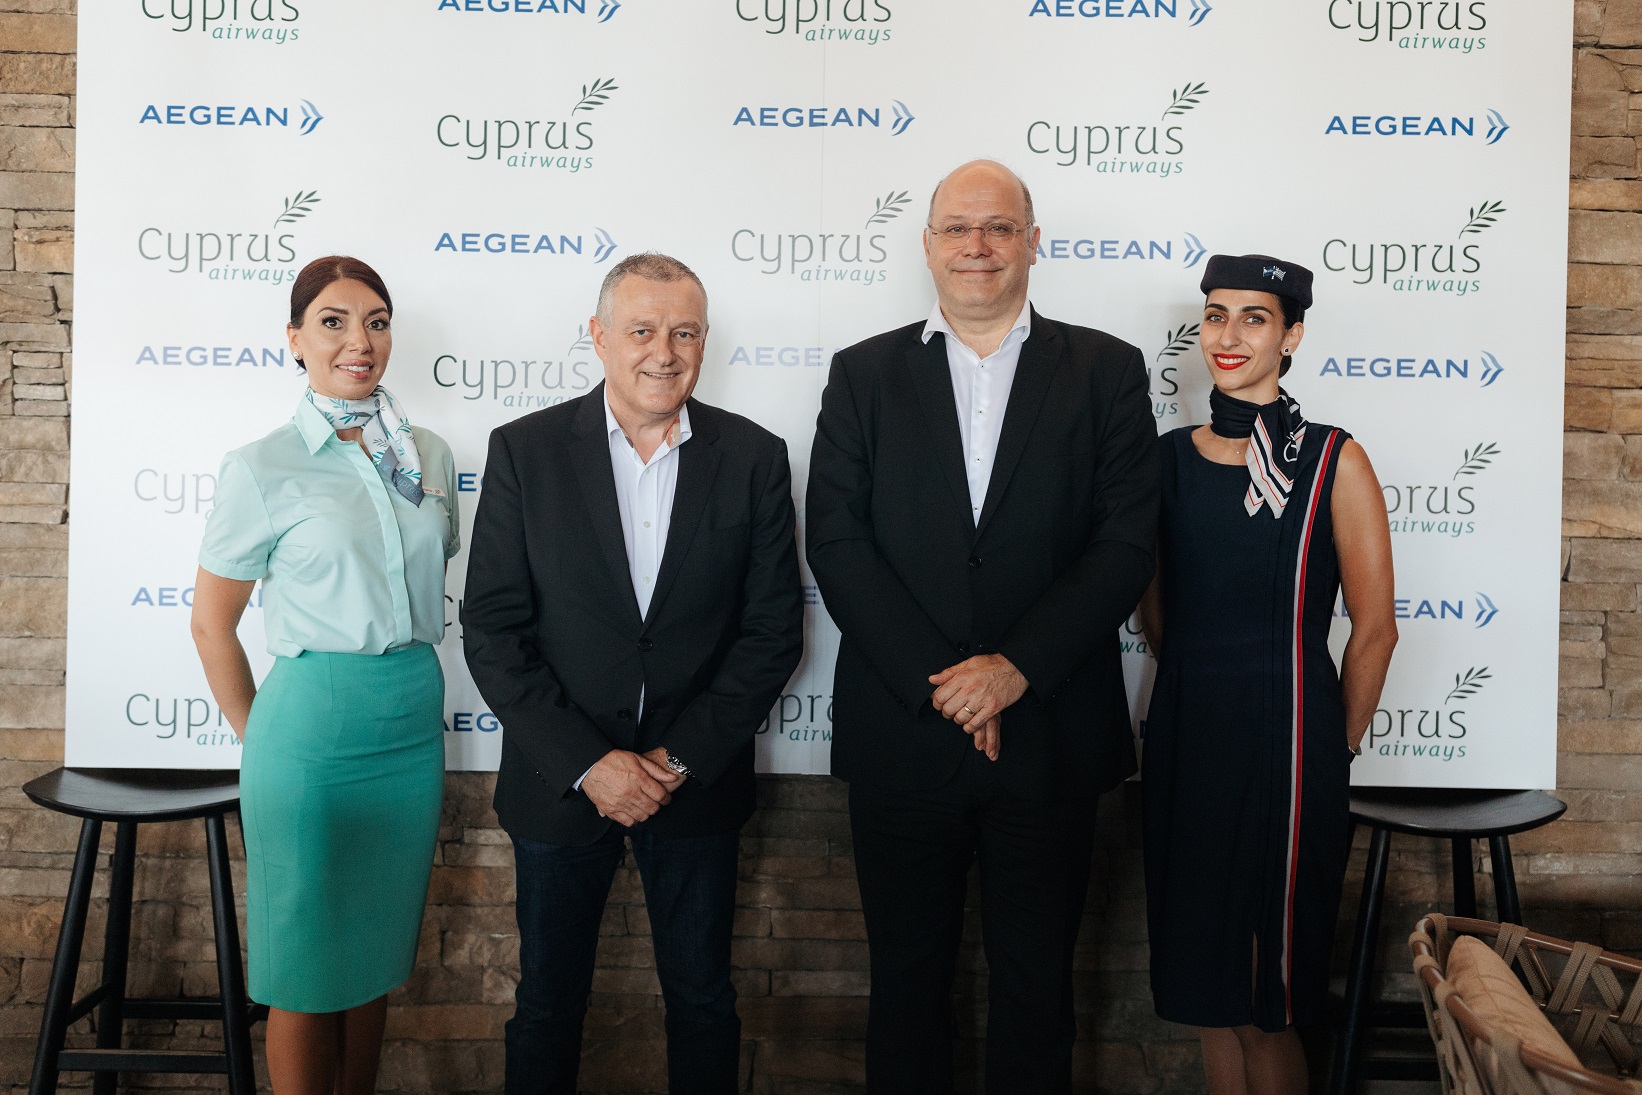 ©Aegean - Cyprus Airways